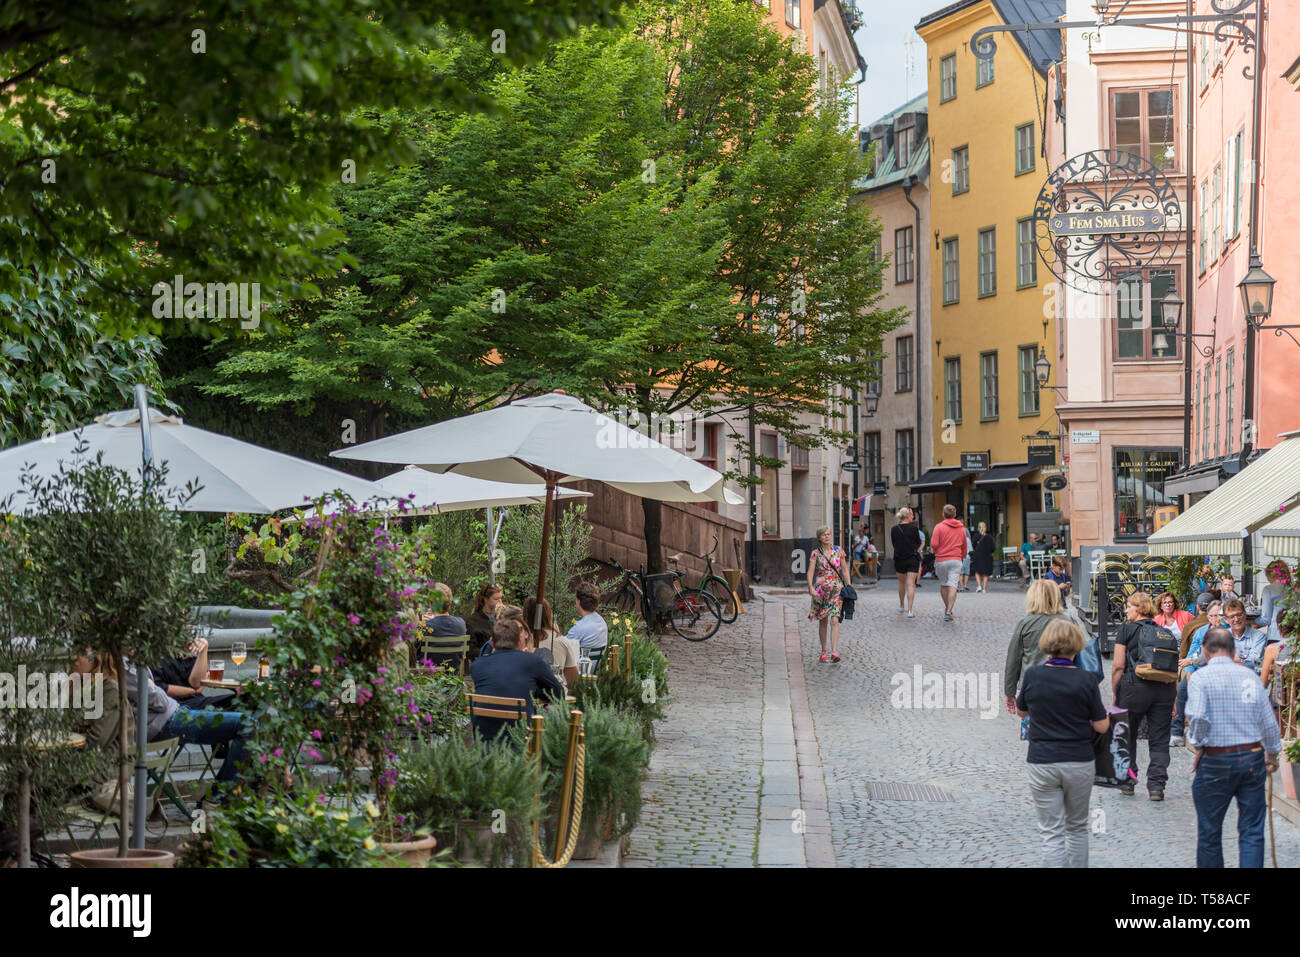 I turisti e la gente del posto godetevi il colorato ambiente storico di Stoccolma, la Gamla Stan (la città vecchia). Foto Stock